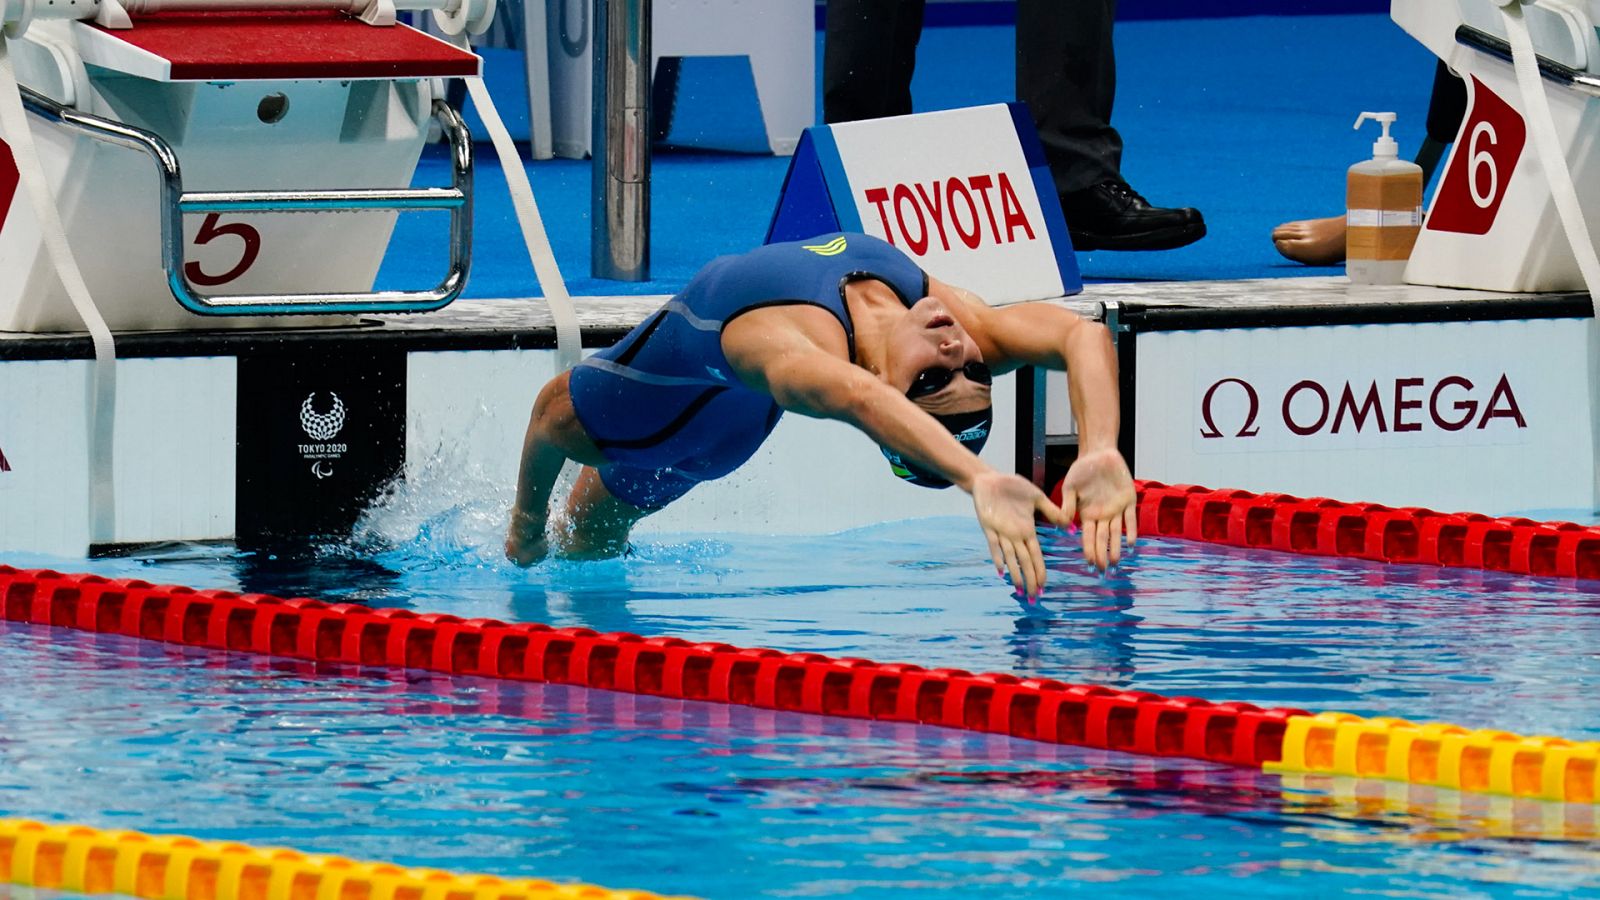 Paralímpicos Tokyo 2020 - Natación: Final 100 espalda femenino S5 con Nuria Marqués - Ver ahora